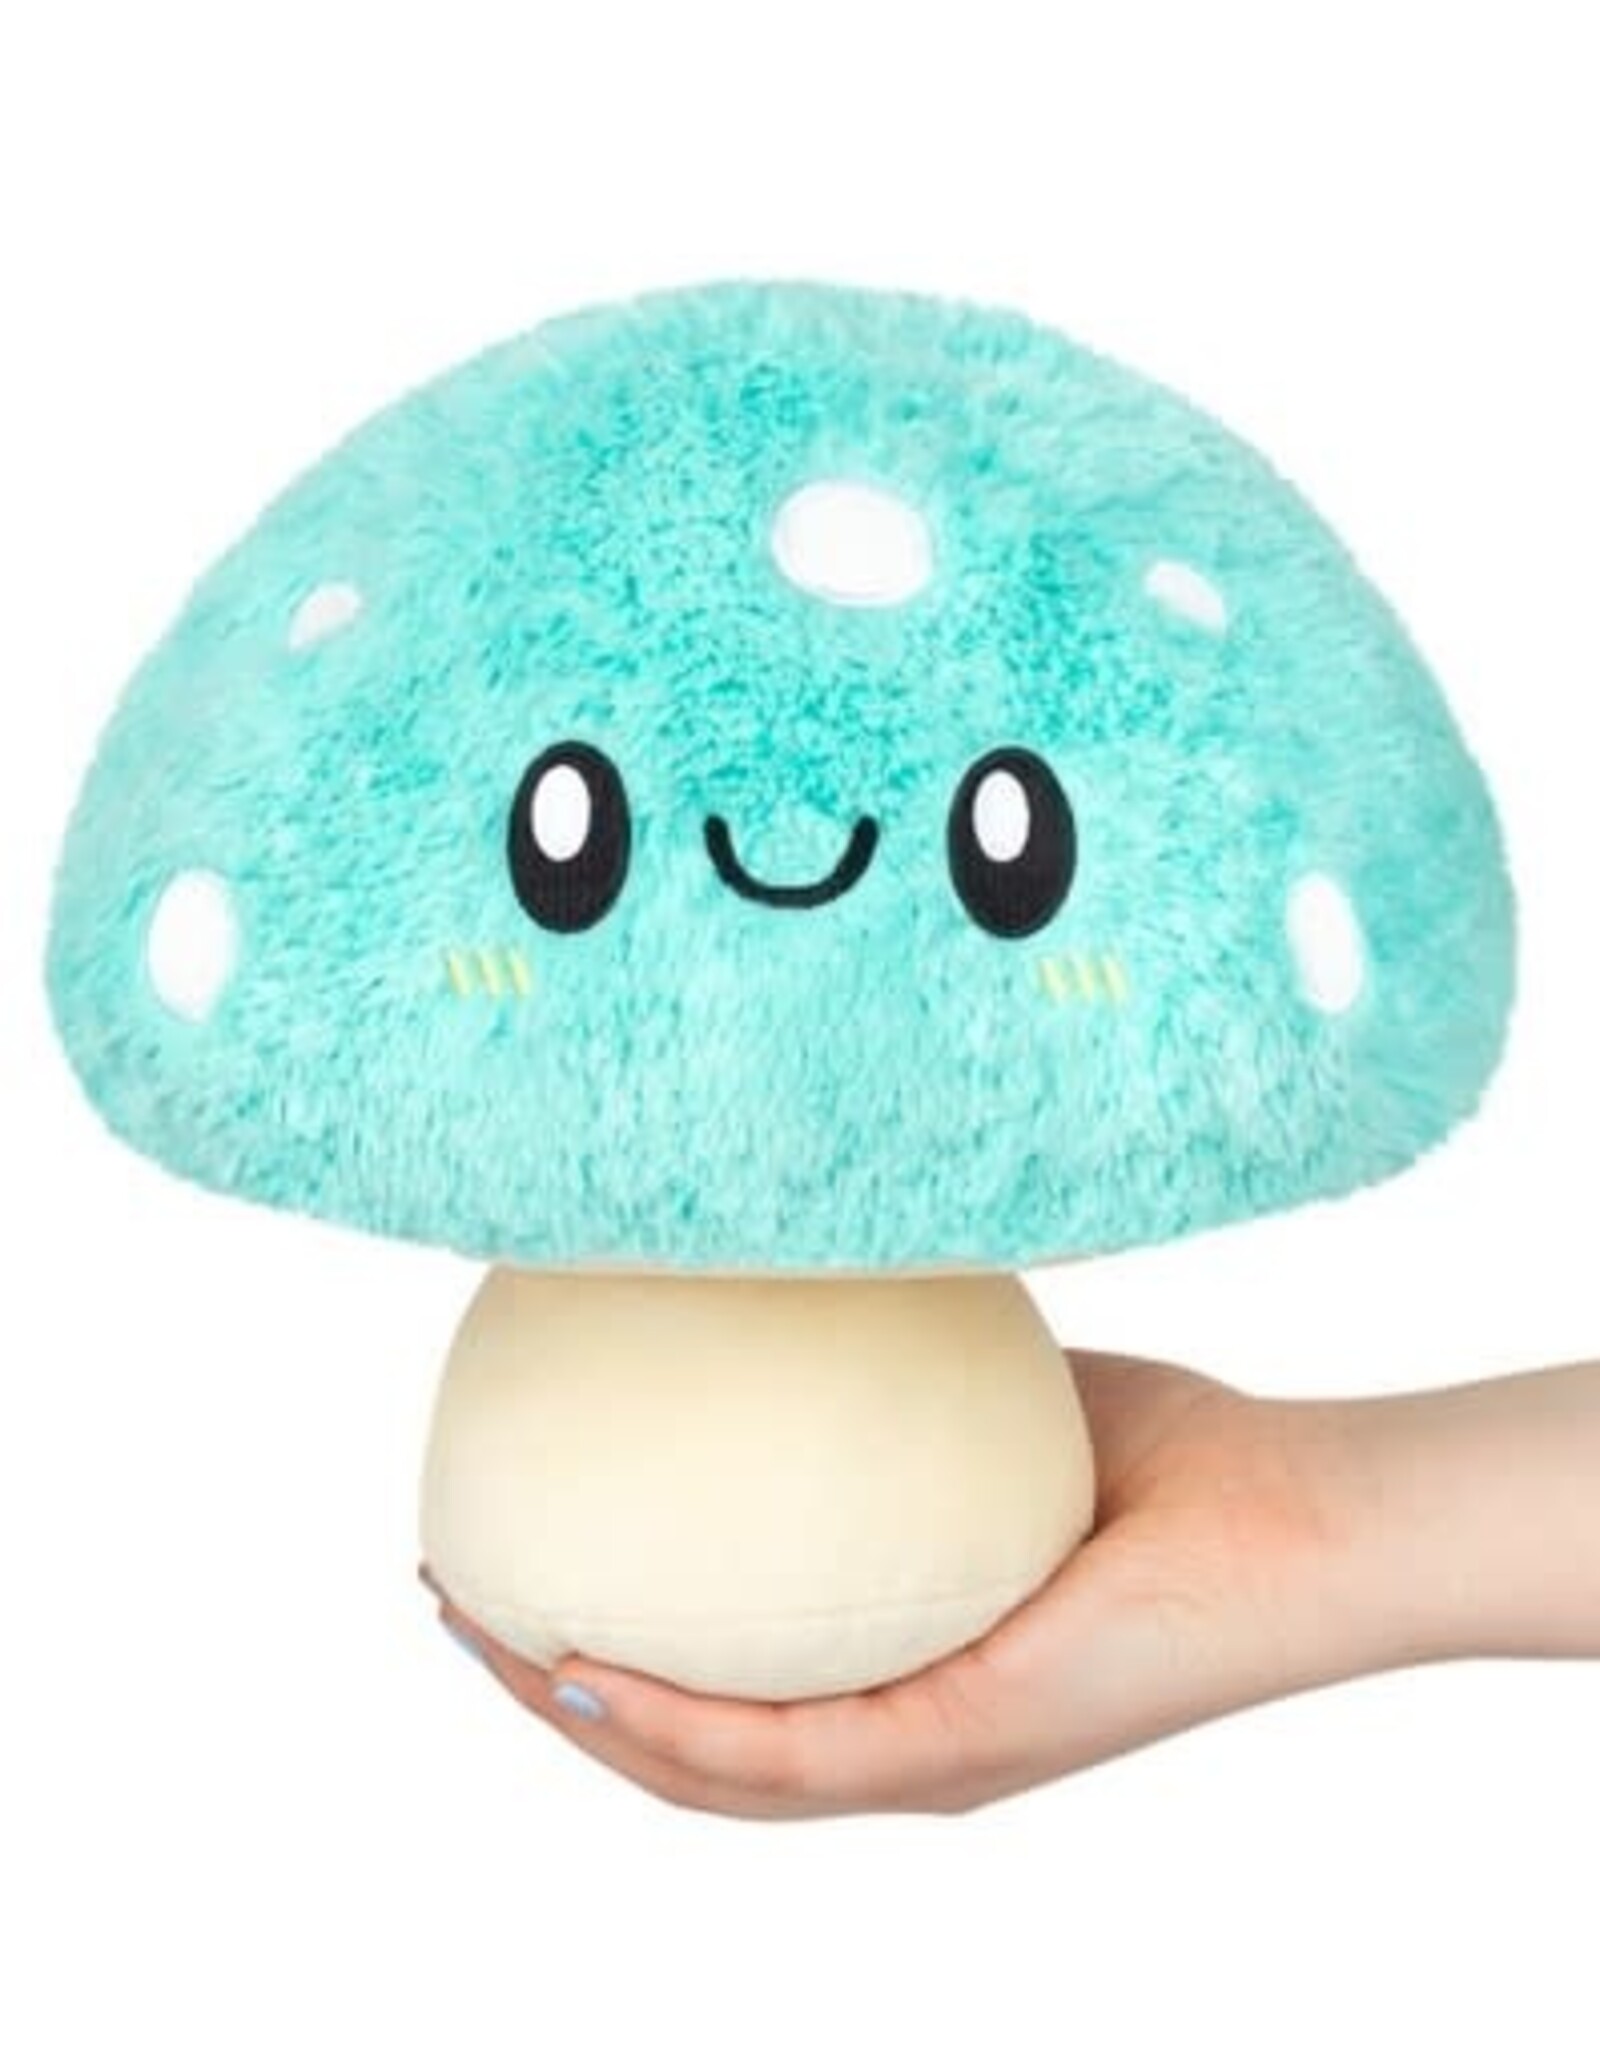 Mini Turquoise Mushroom 7"